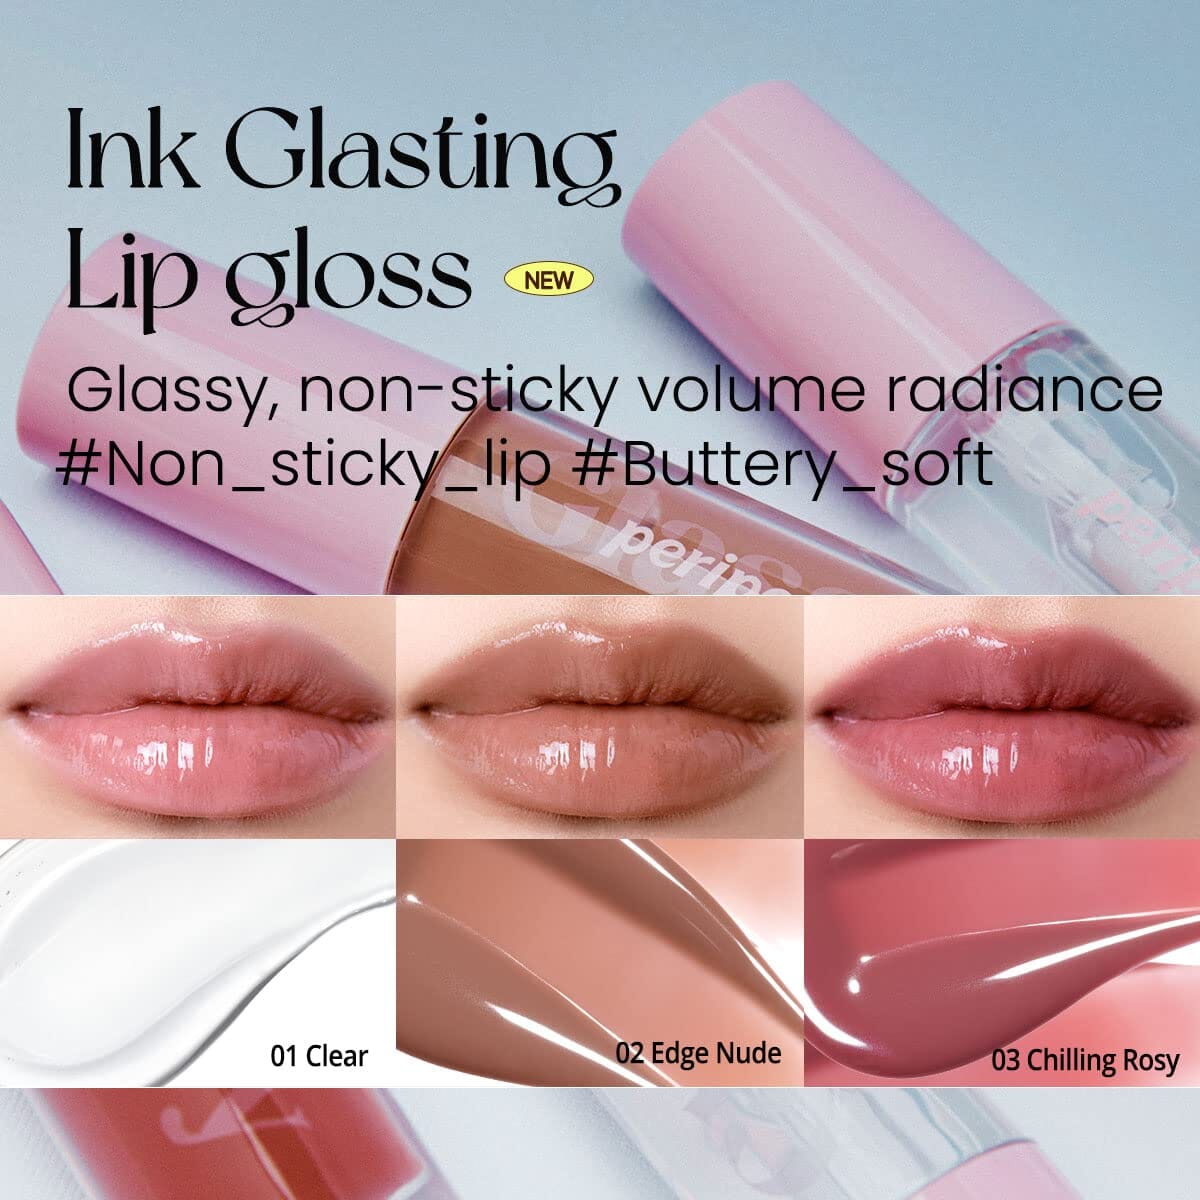 Peripera Ink Glasting Lip Gloss 